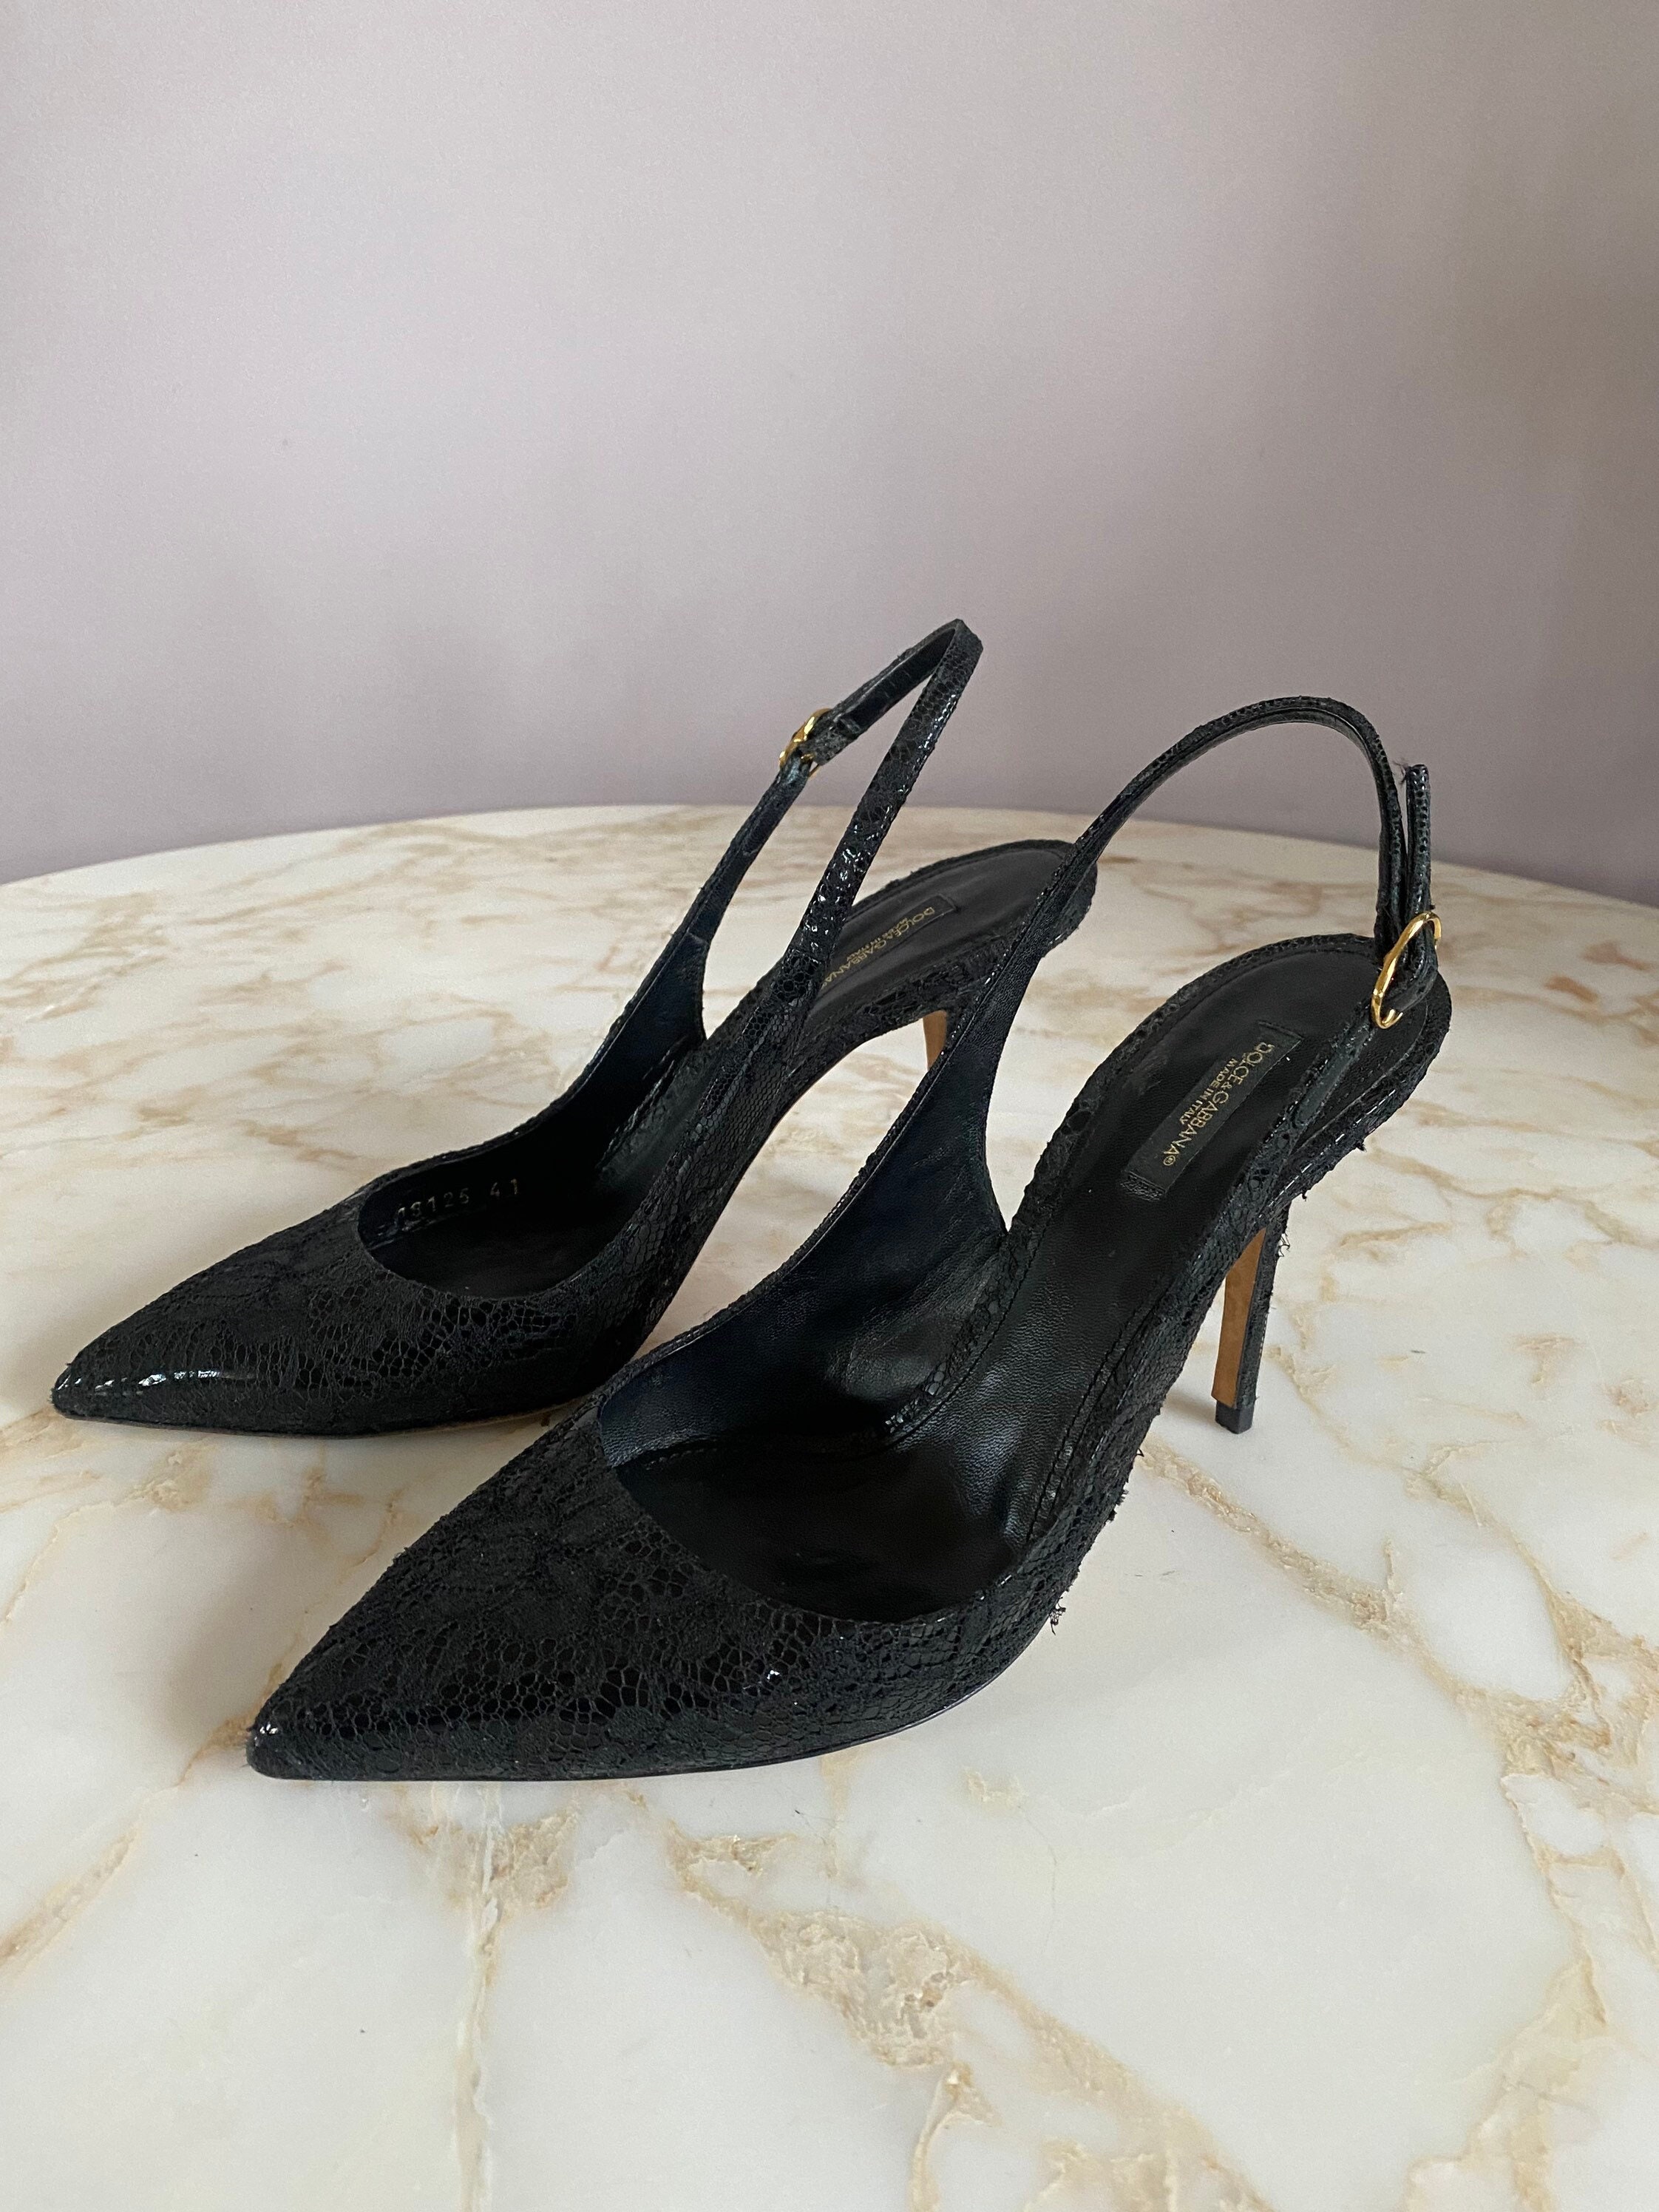 Dolce Gabbana Monogram Denim Heels Sandals 38.5